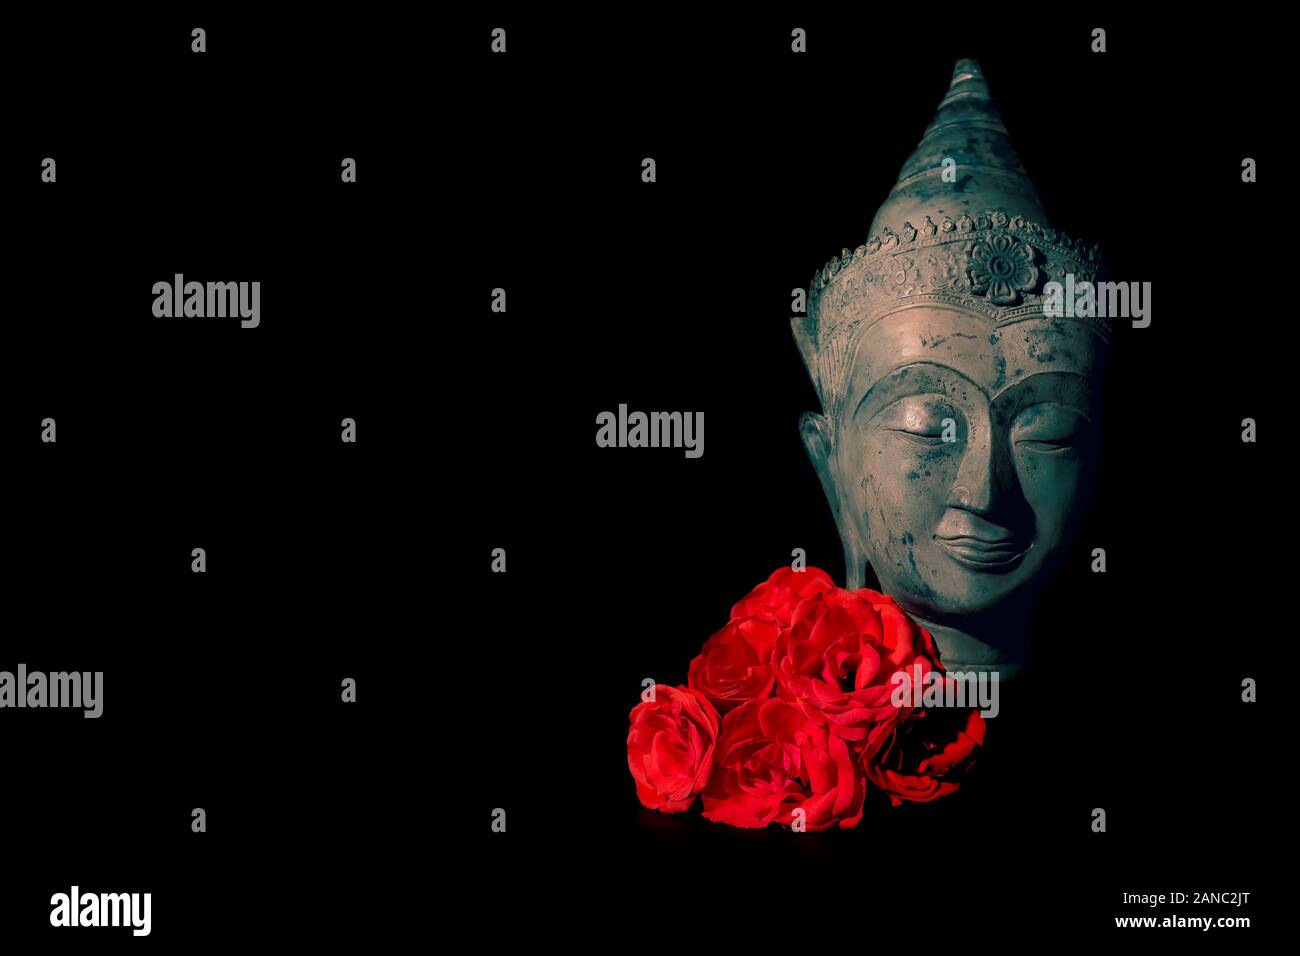 Frieden und Liebe. Traditionelle Meditation Buddha Kopf mit roten Rosen isoliert auf schwarzen Hintergrund Copyspace. Wunderschönes friedliches Bild. Ruhigen buddhistischen Geist Stockfoto